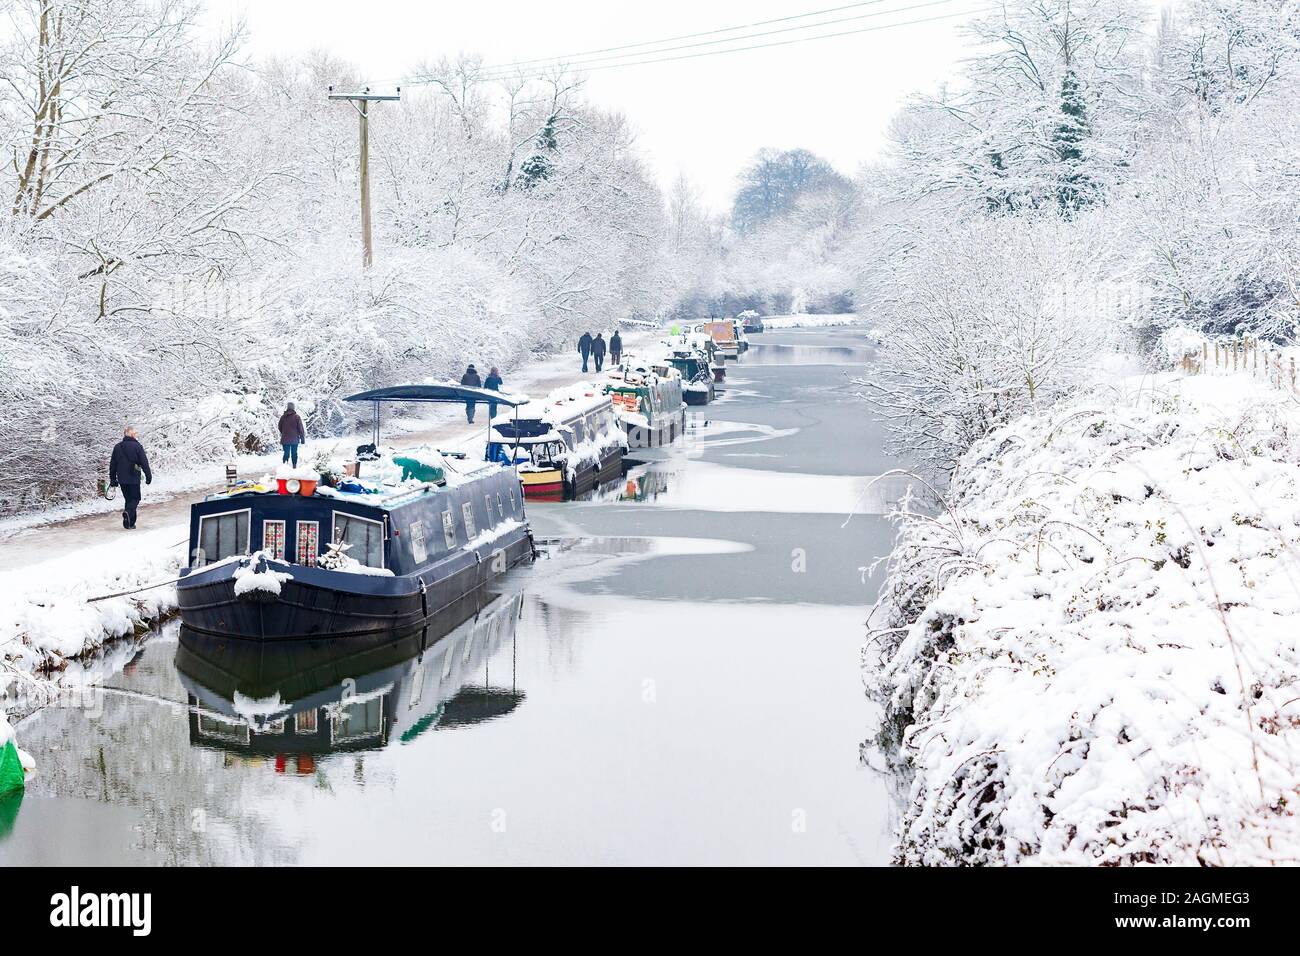 BATH, Reino Unido - 19 Ene : Senderistas pasan barcos amarrados en el canal de Kennet y Avon en la nieve el 19 de enero de 2013. Los barcos permanecen amarrados a lo largo de todo el invierno Foto de stock